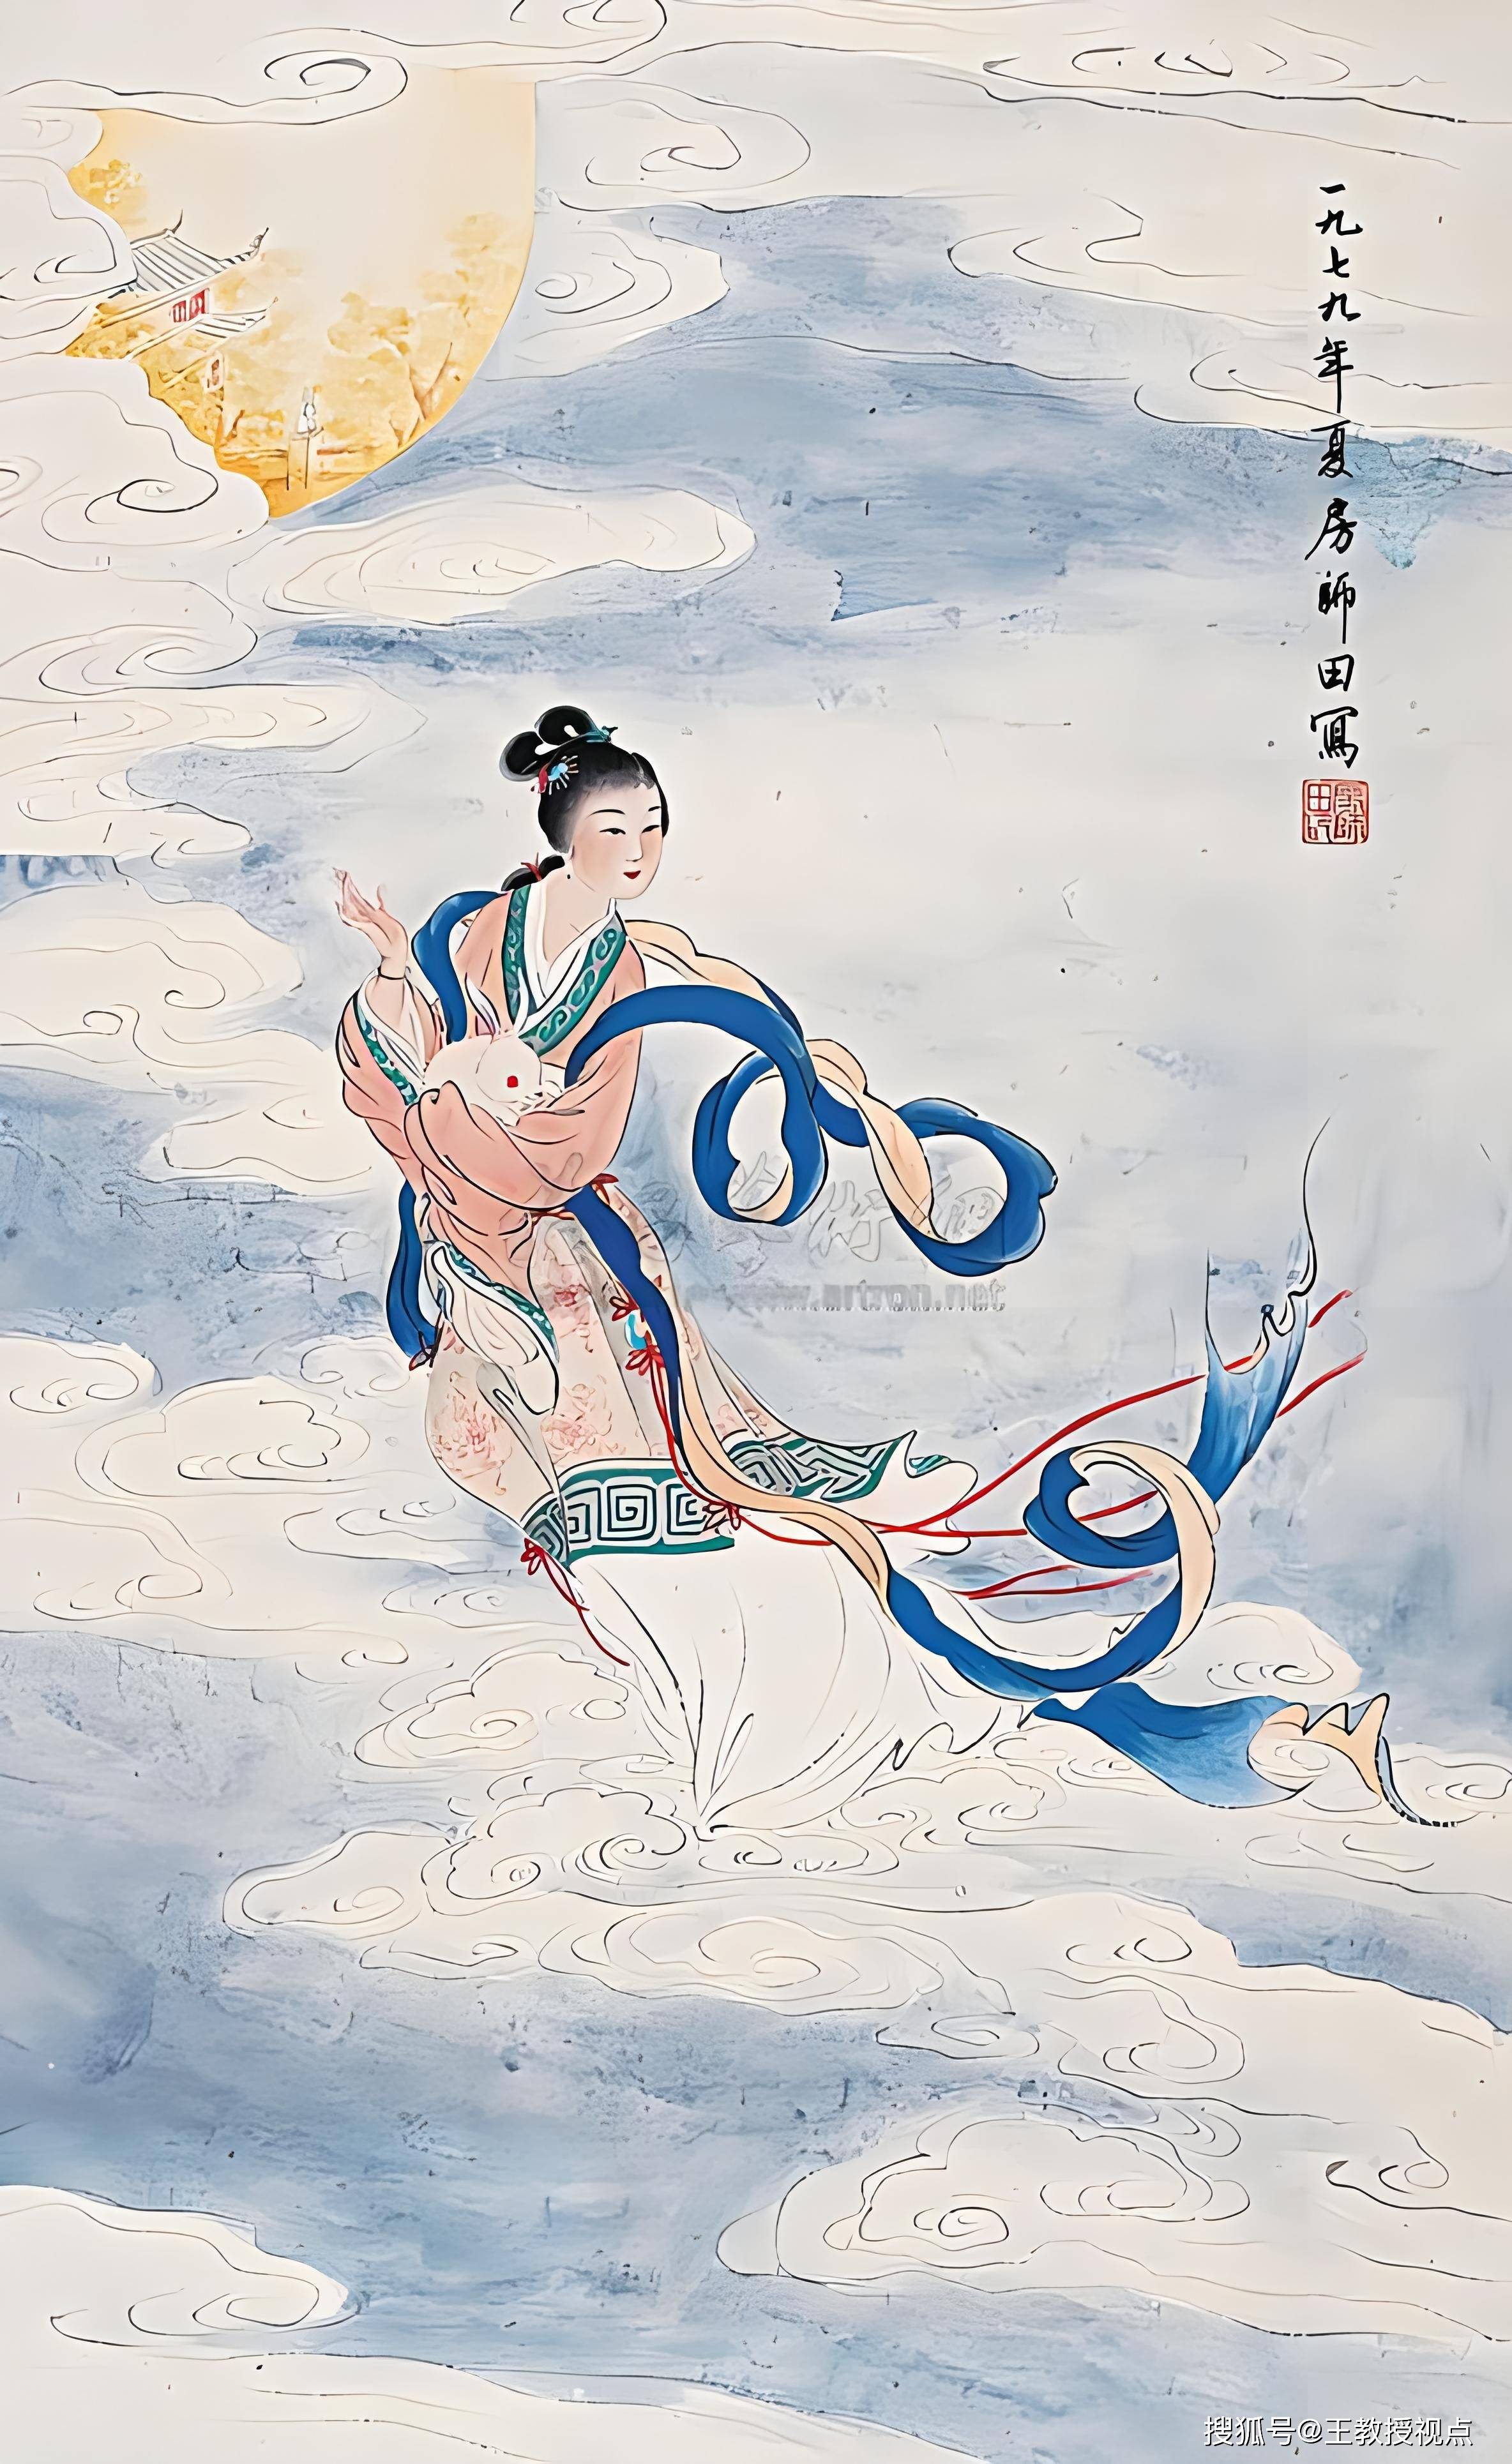 嫦娥传说与中华文化:月宫仙子的科学幻想与文化传承